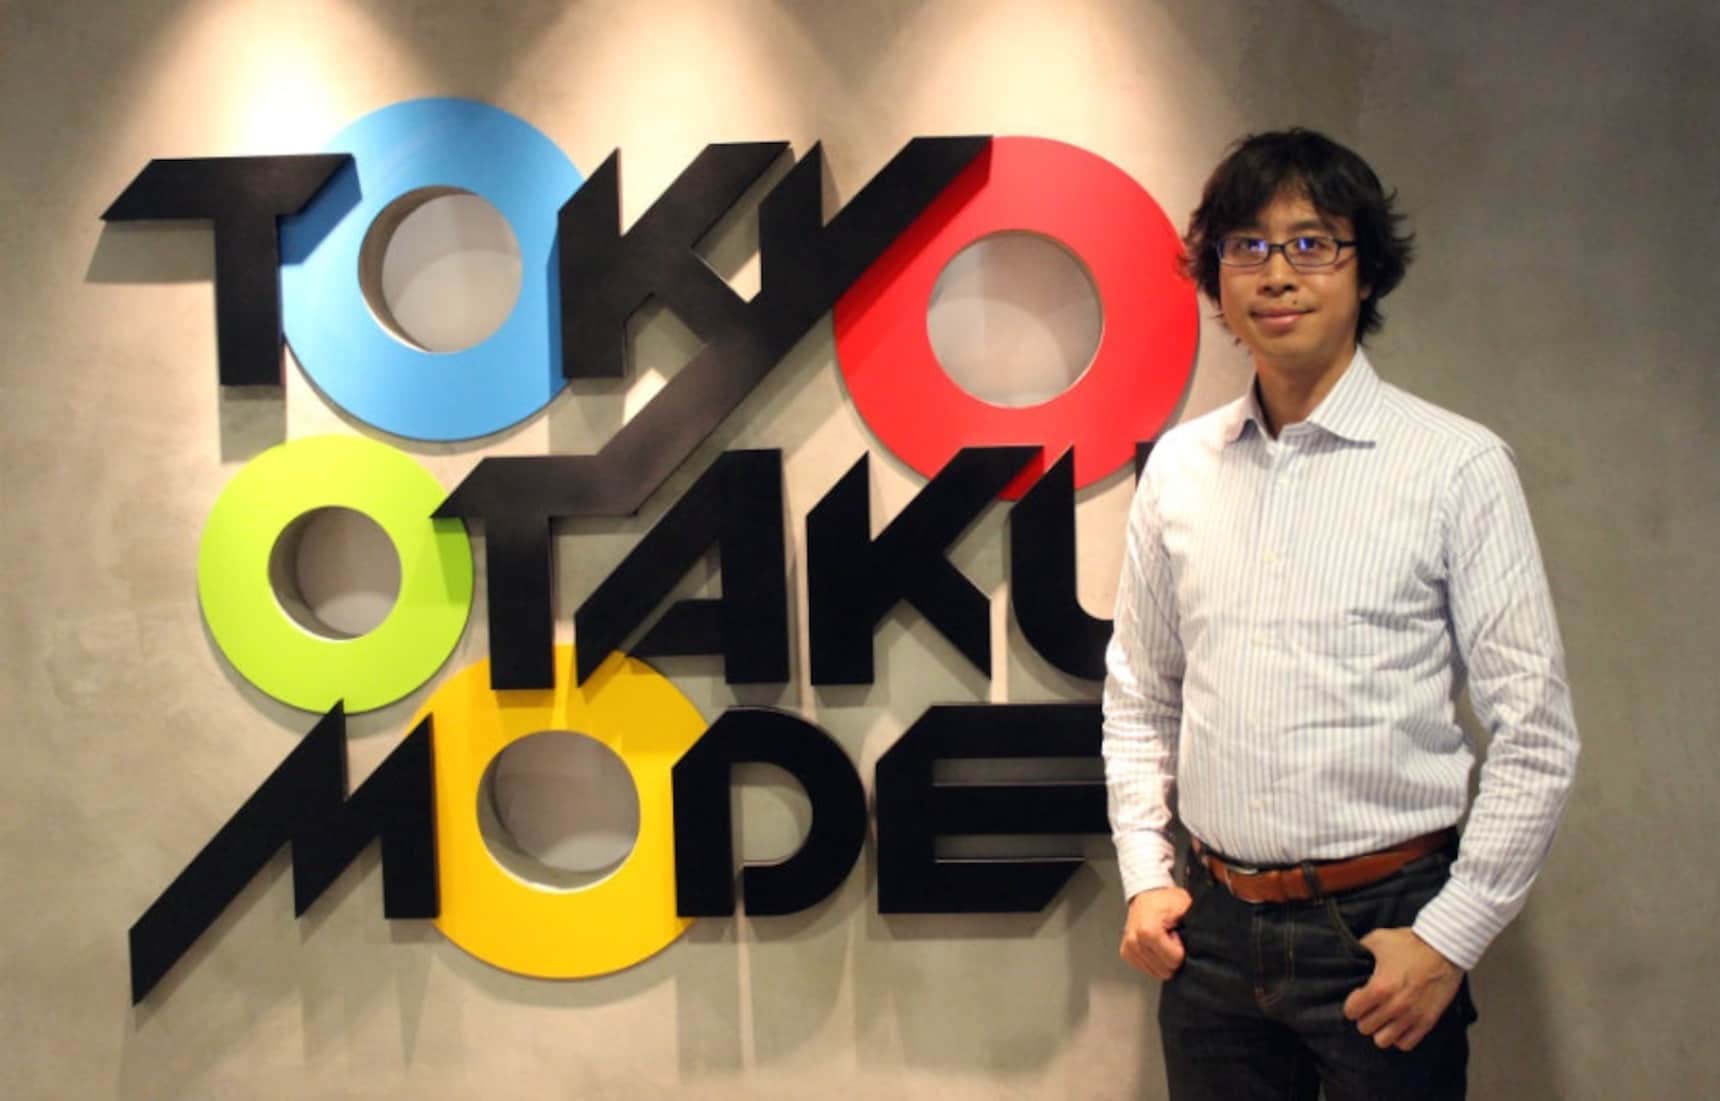 Marketing the Otaku Lifestyle Abroad